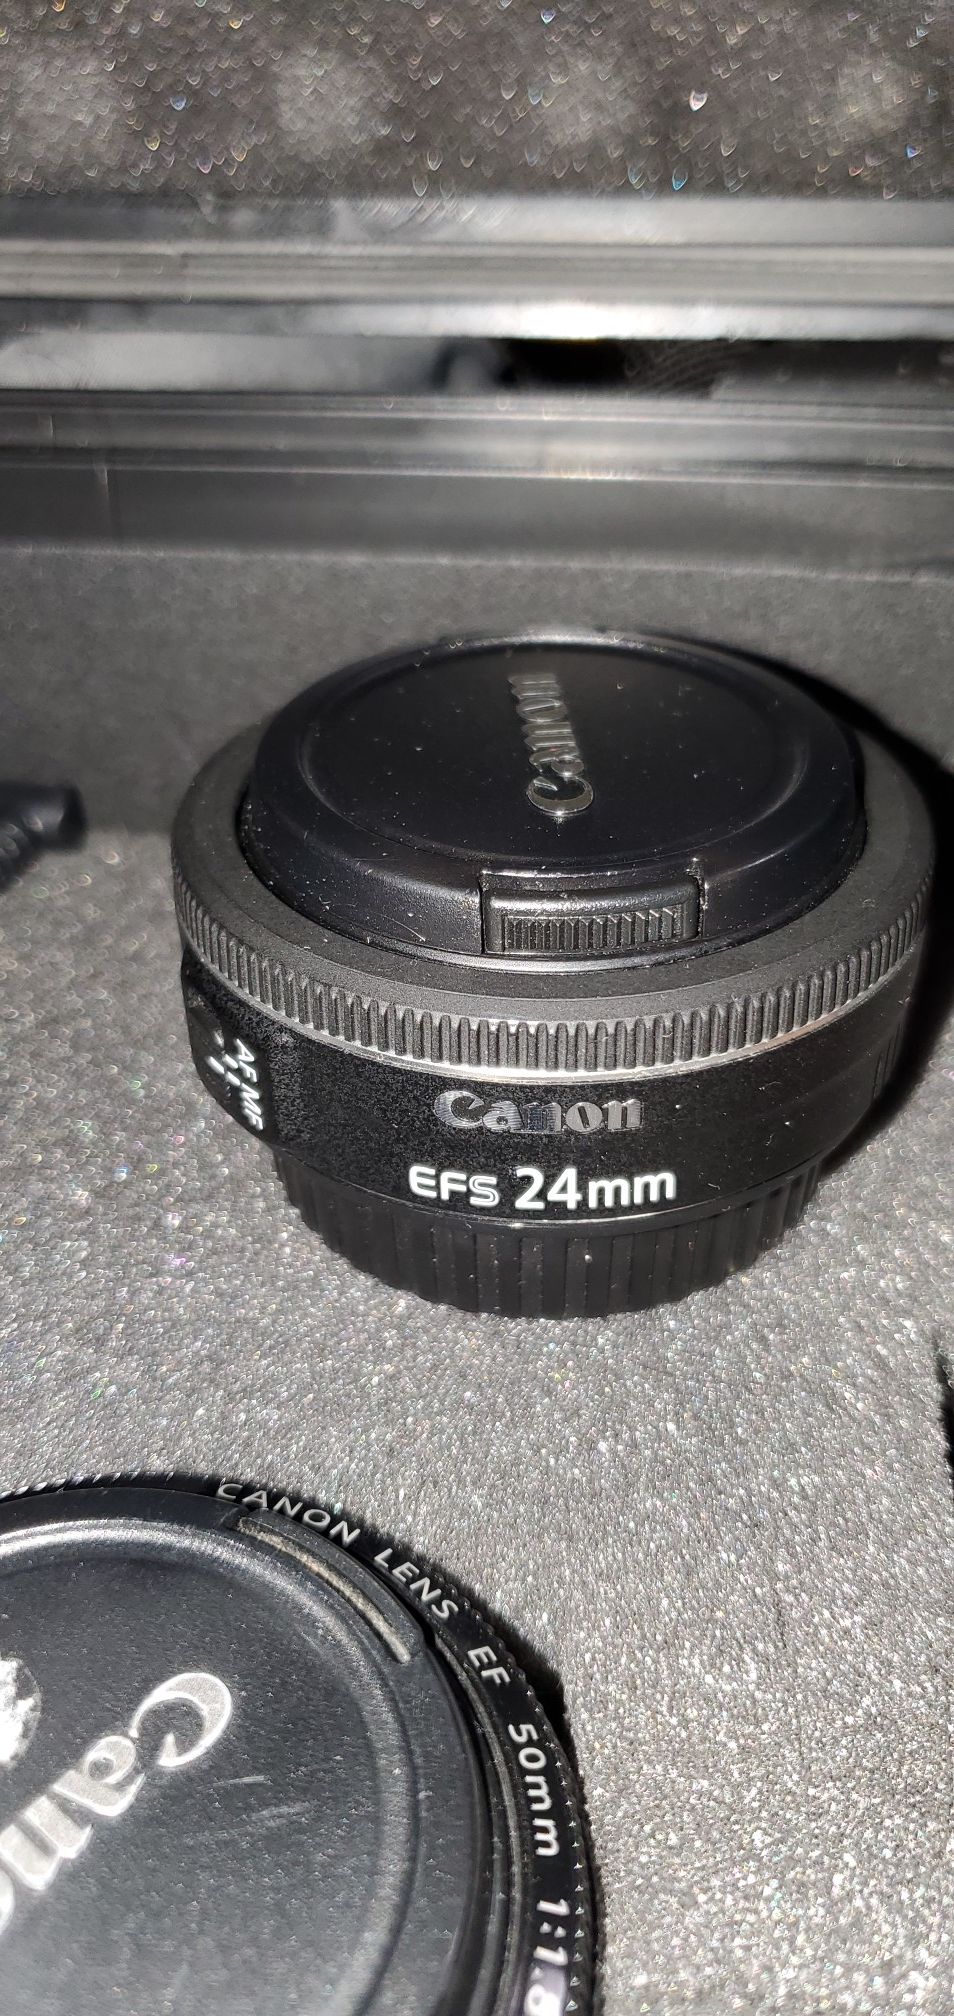 Canon 24mm EFs lens